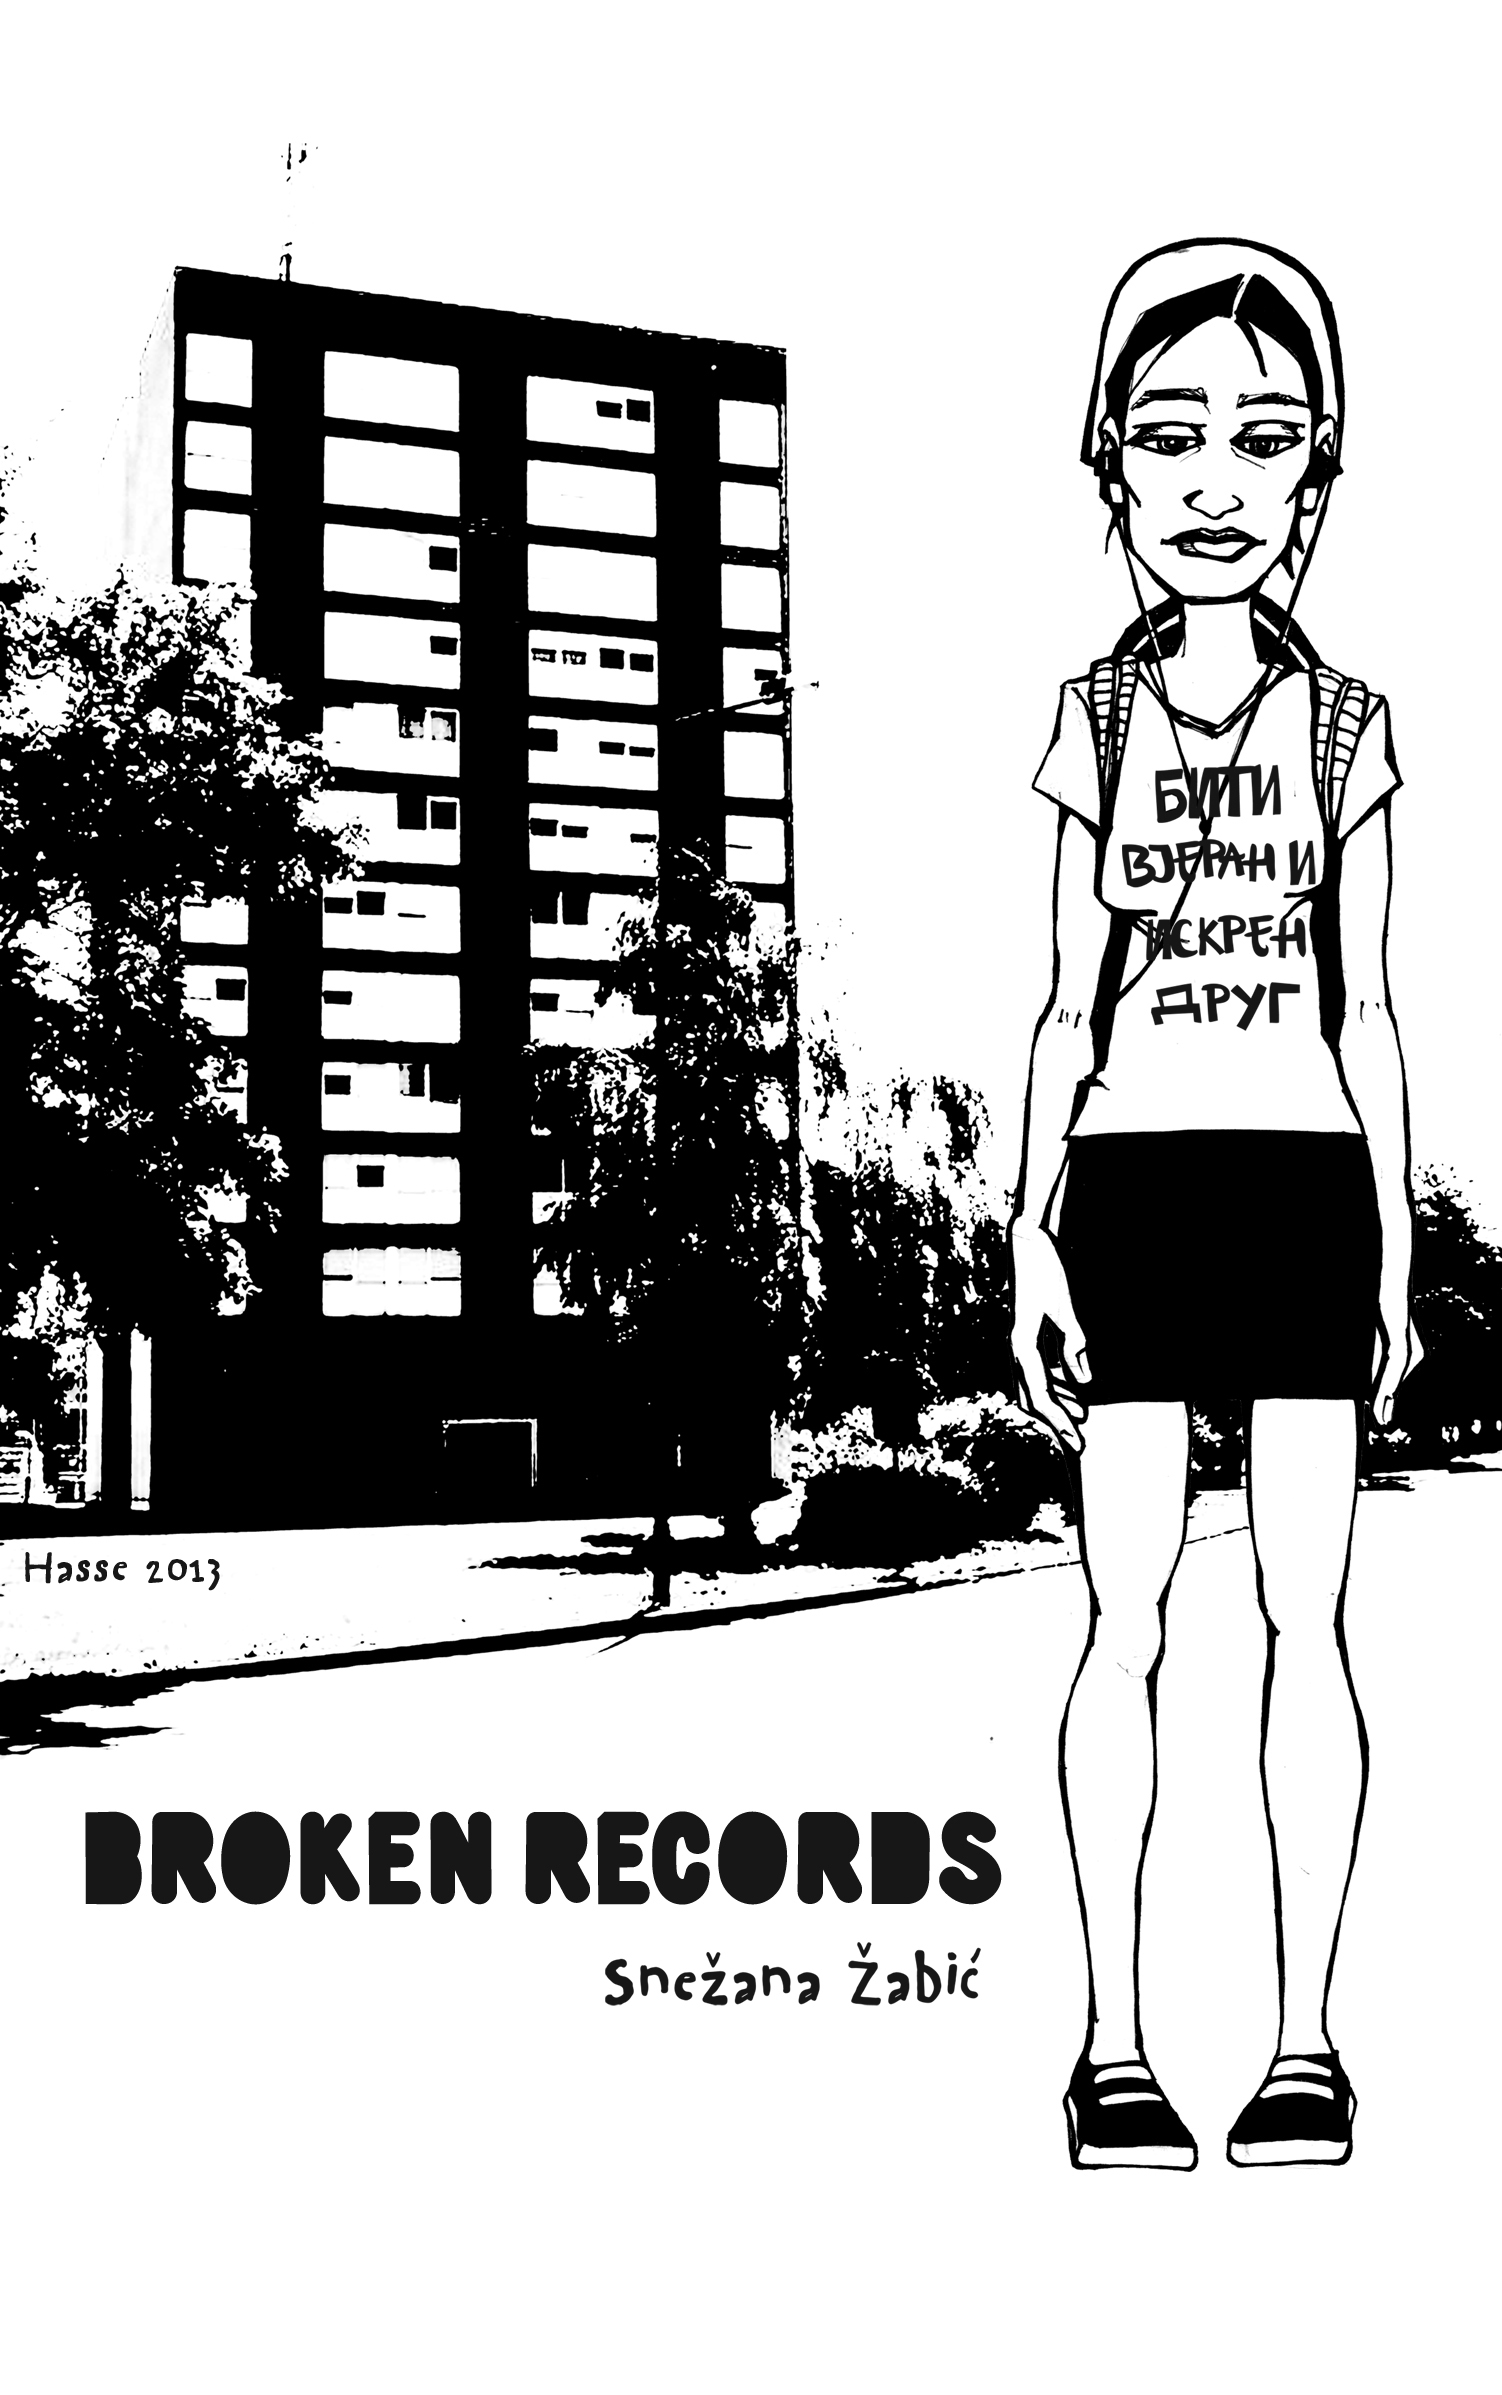 Broken Records (punctum books, 2016)